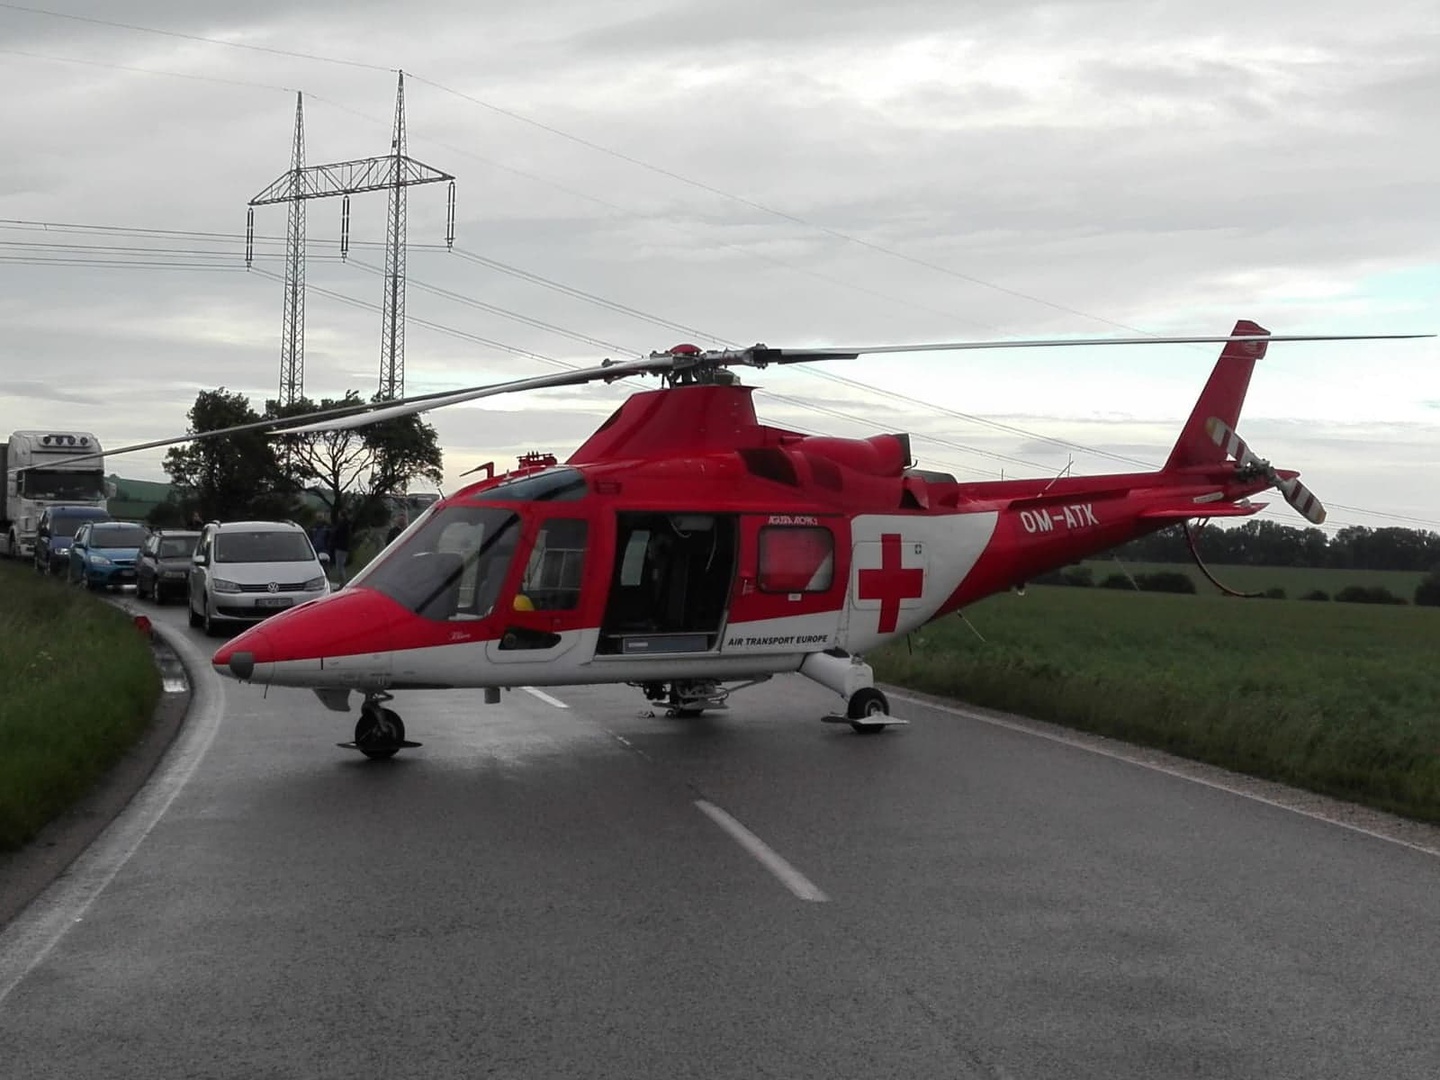 K vážnej dopravnej nehode pri Trstíne boli vyslané dva vrtuľníky